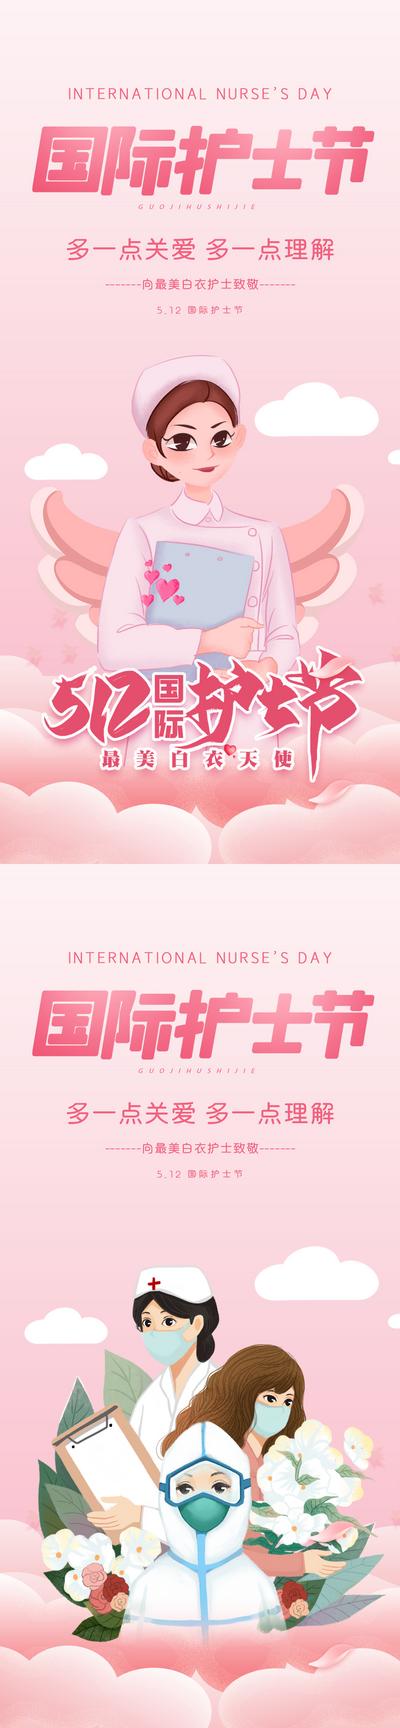 南门网 海报 房地产 公历节日 系列 插画 国际护士节